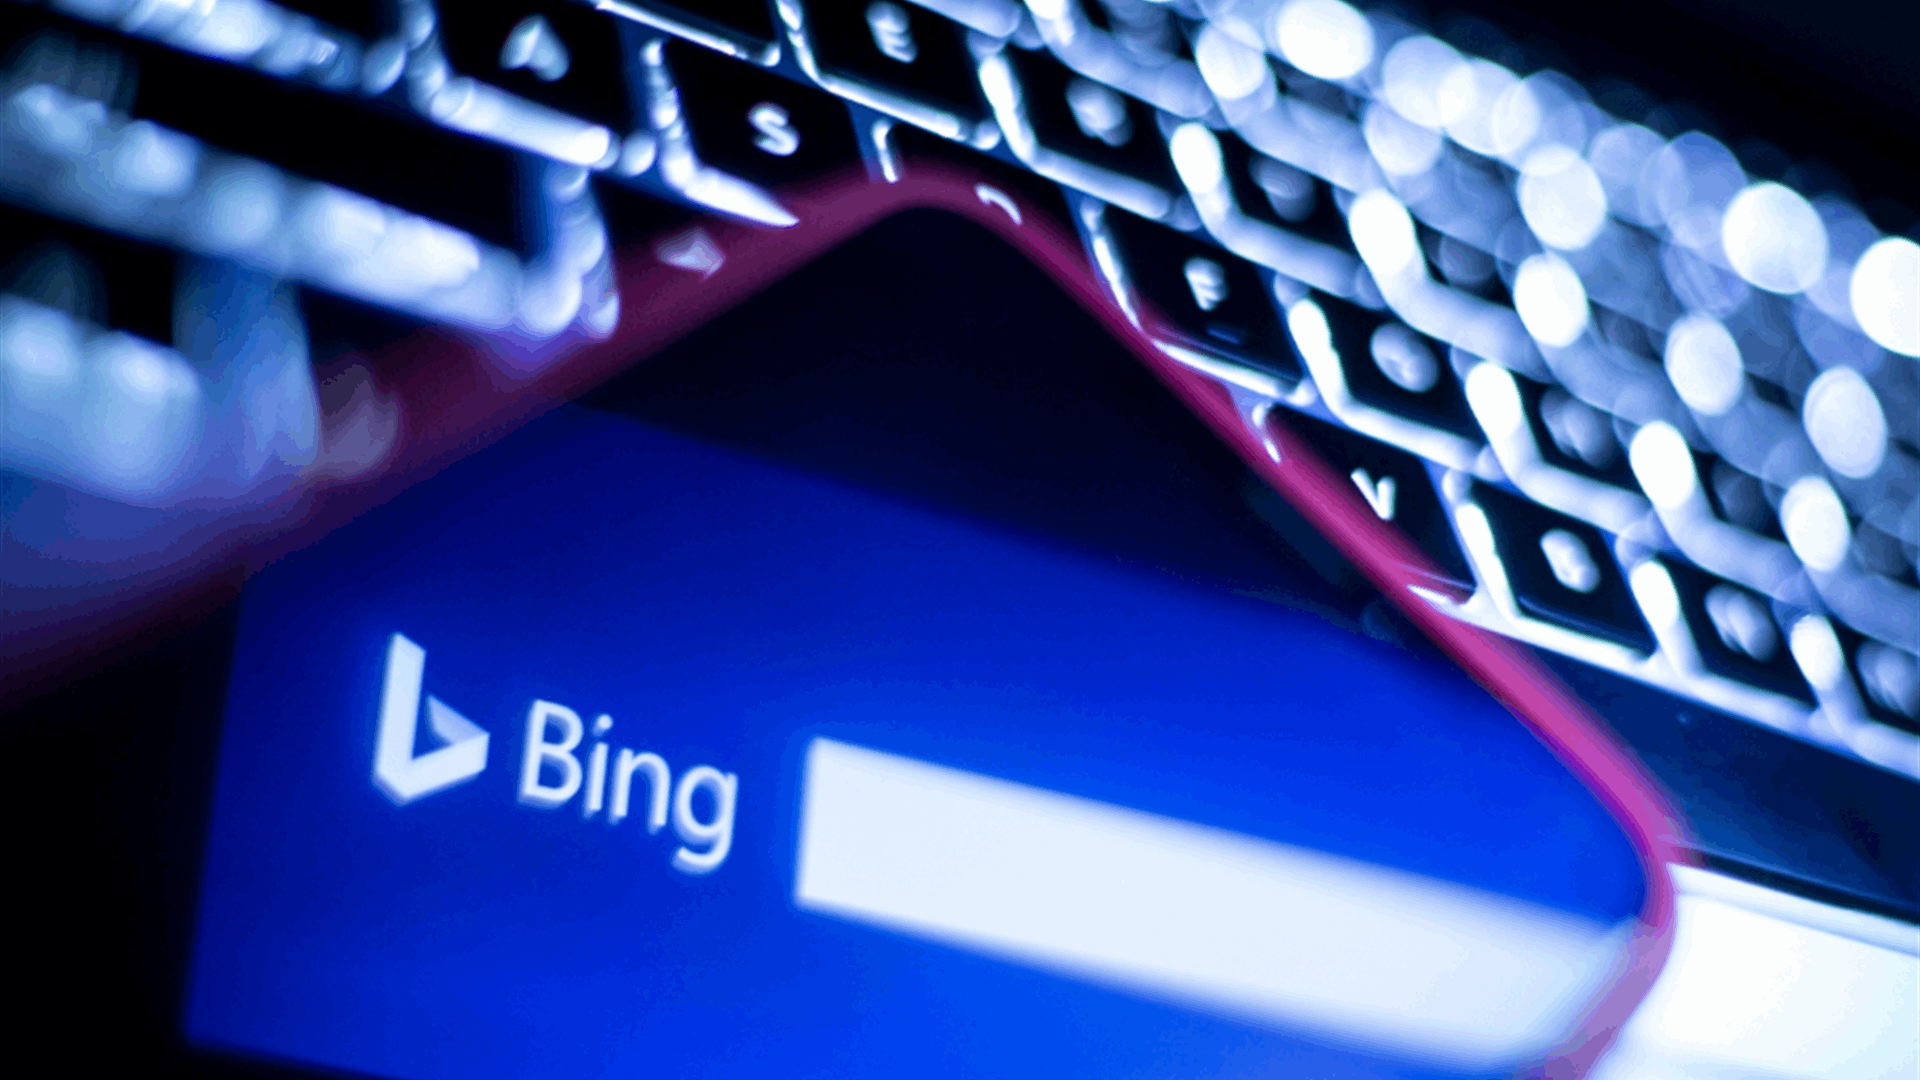 Microsoft brings OpenAI’s DALL-E image creator to the new Bing